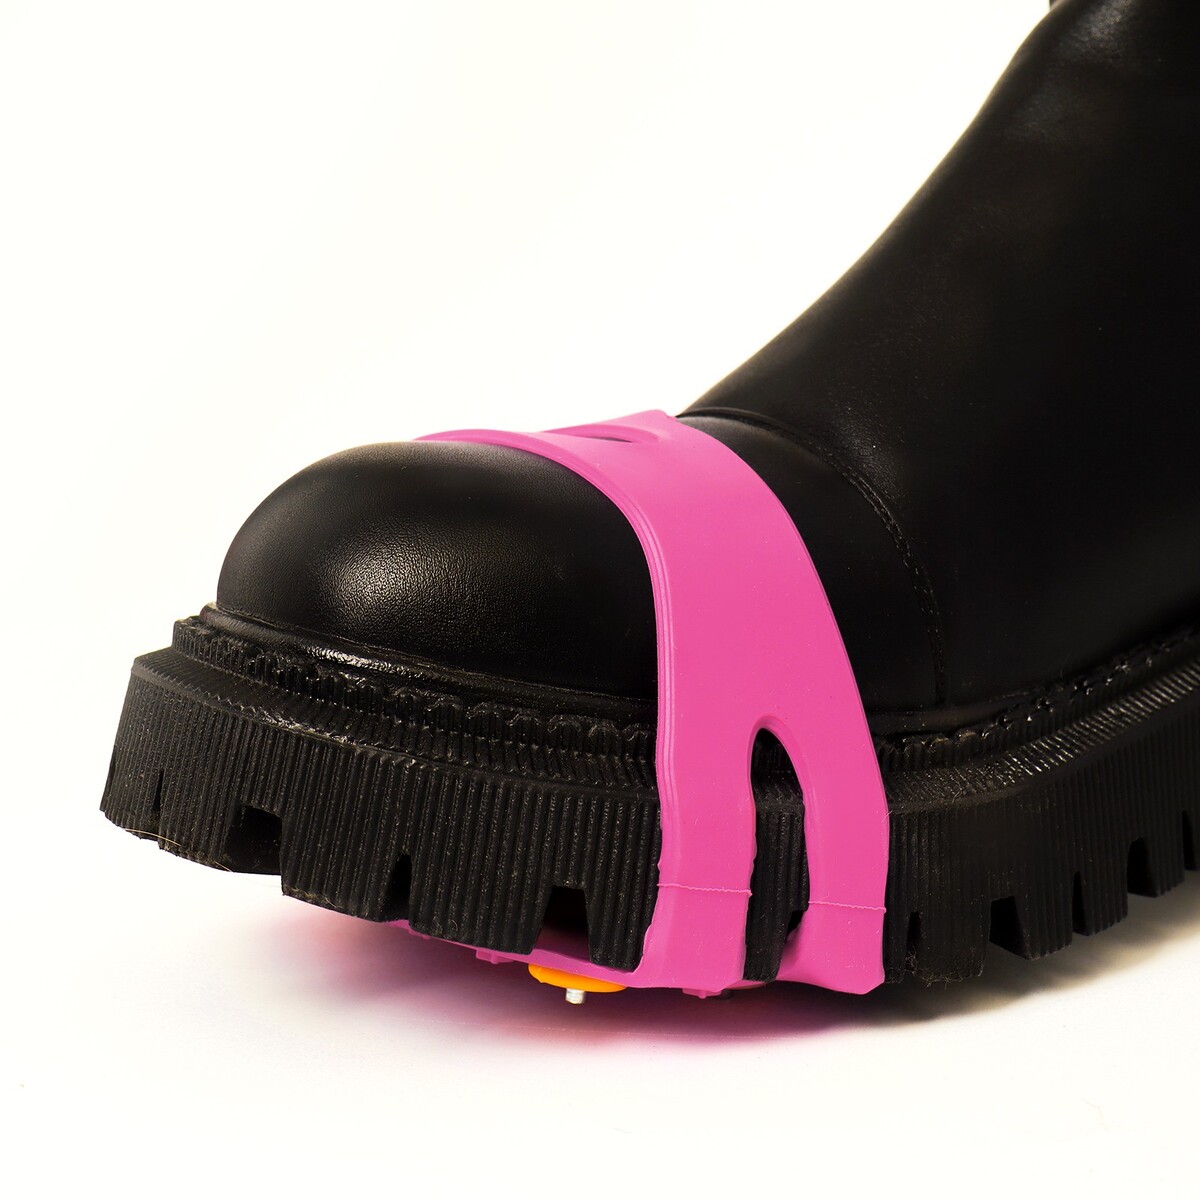 Шипы для обуви на толстой резине 5 шипов, универсальные, розовые No brand 05624035 - фото 3